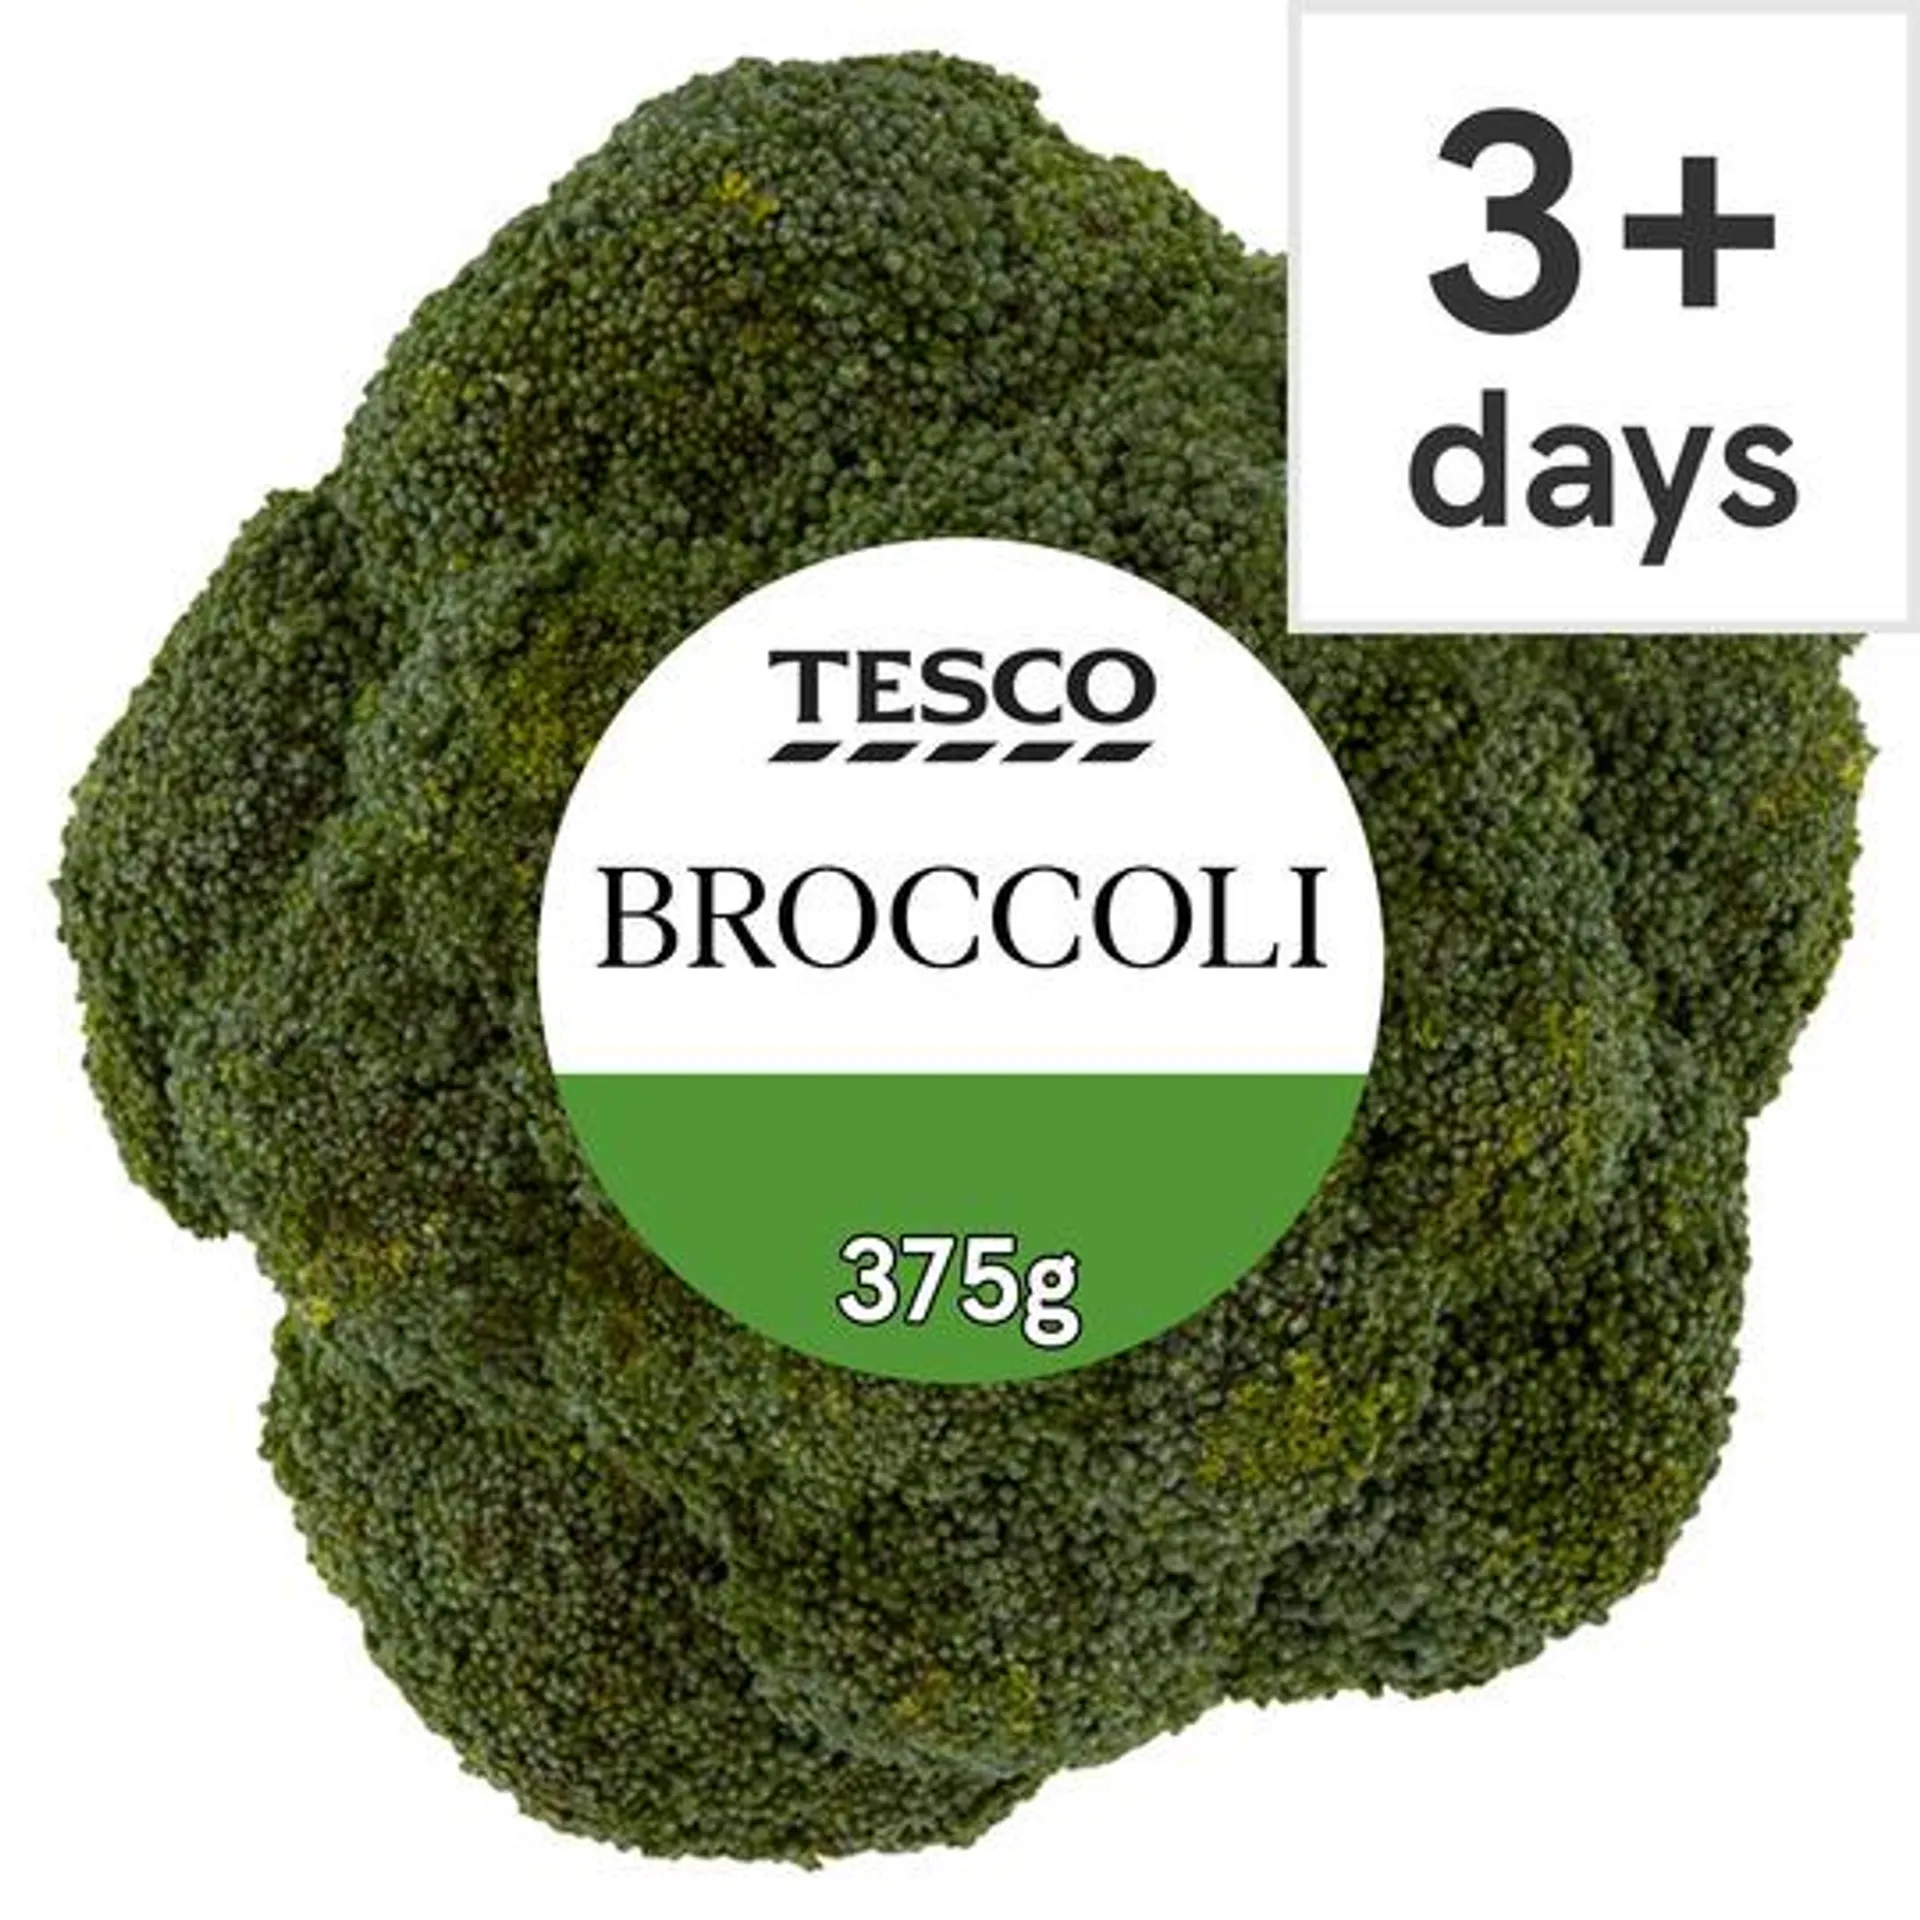 Tesco Broccoli 375G